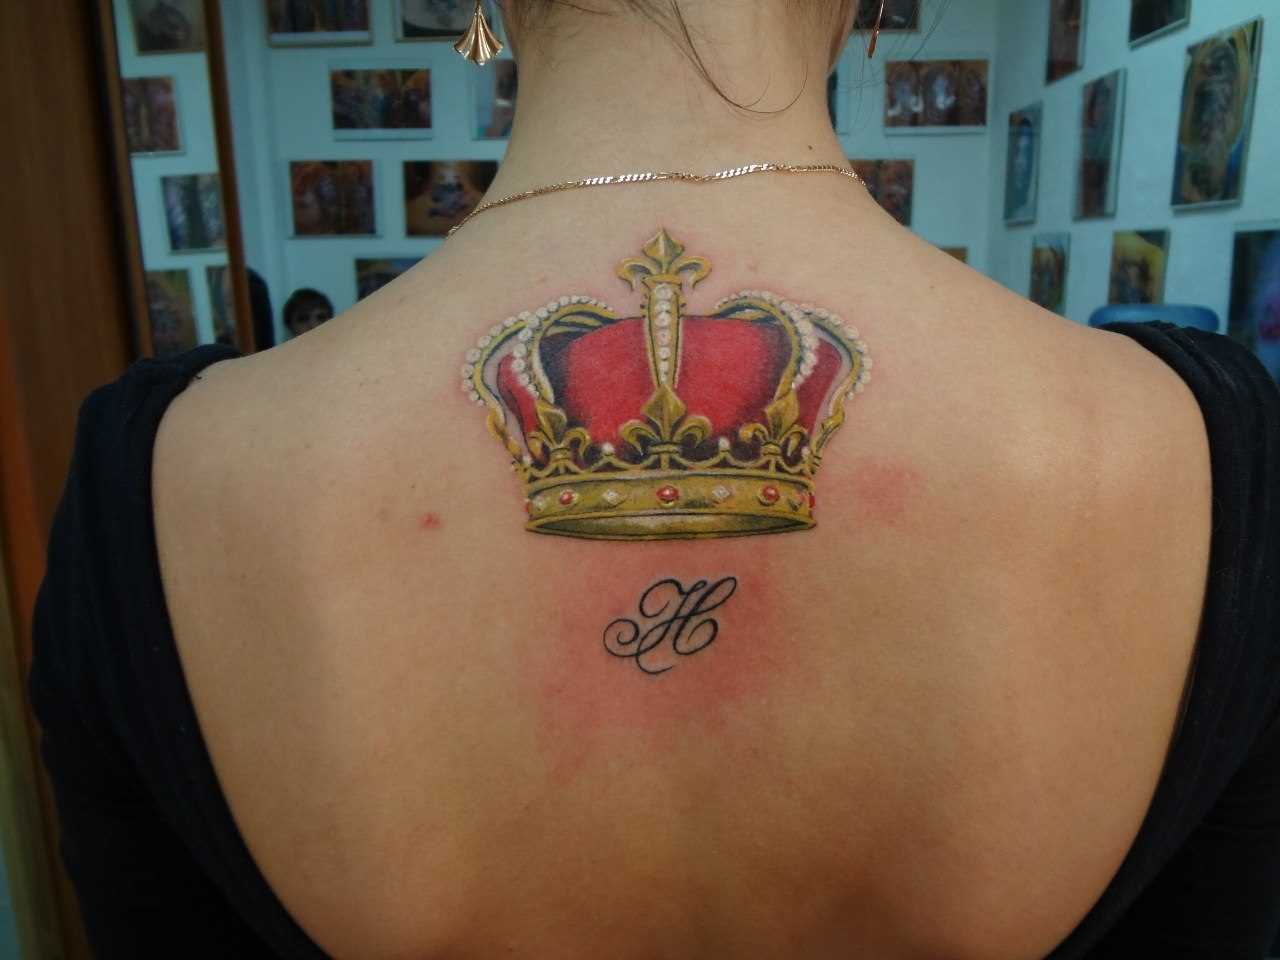 A tatuagem nas costas de uma menina - coroa